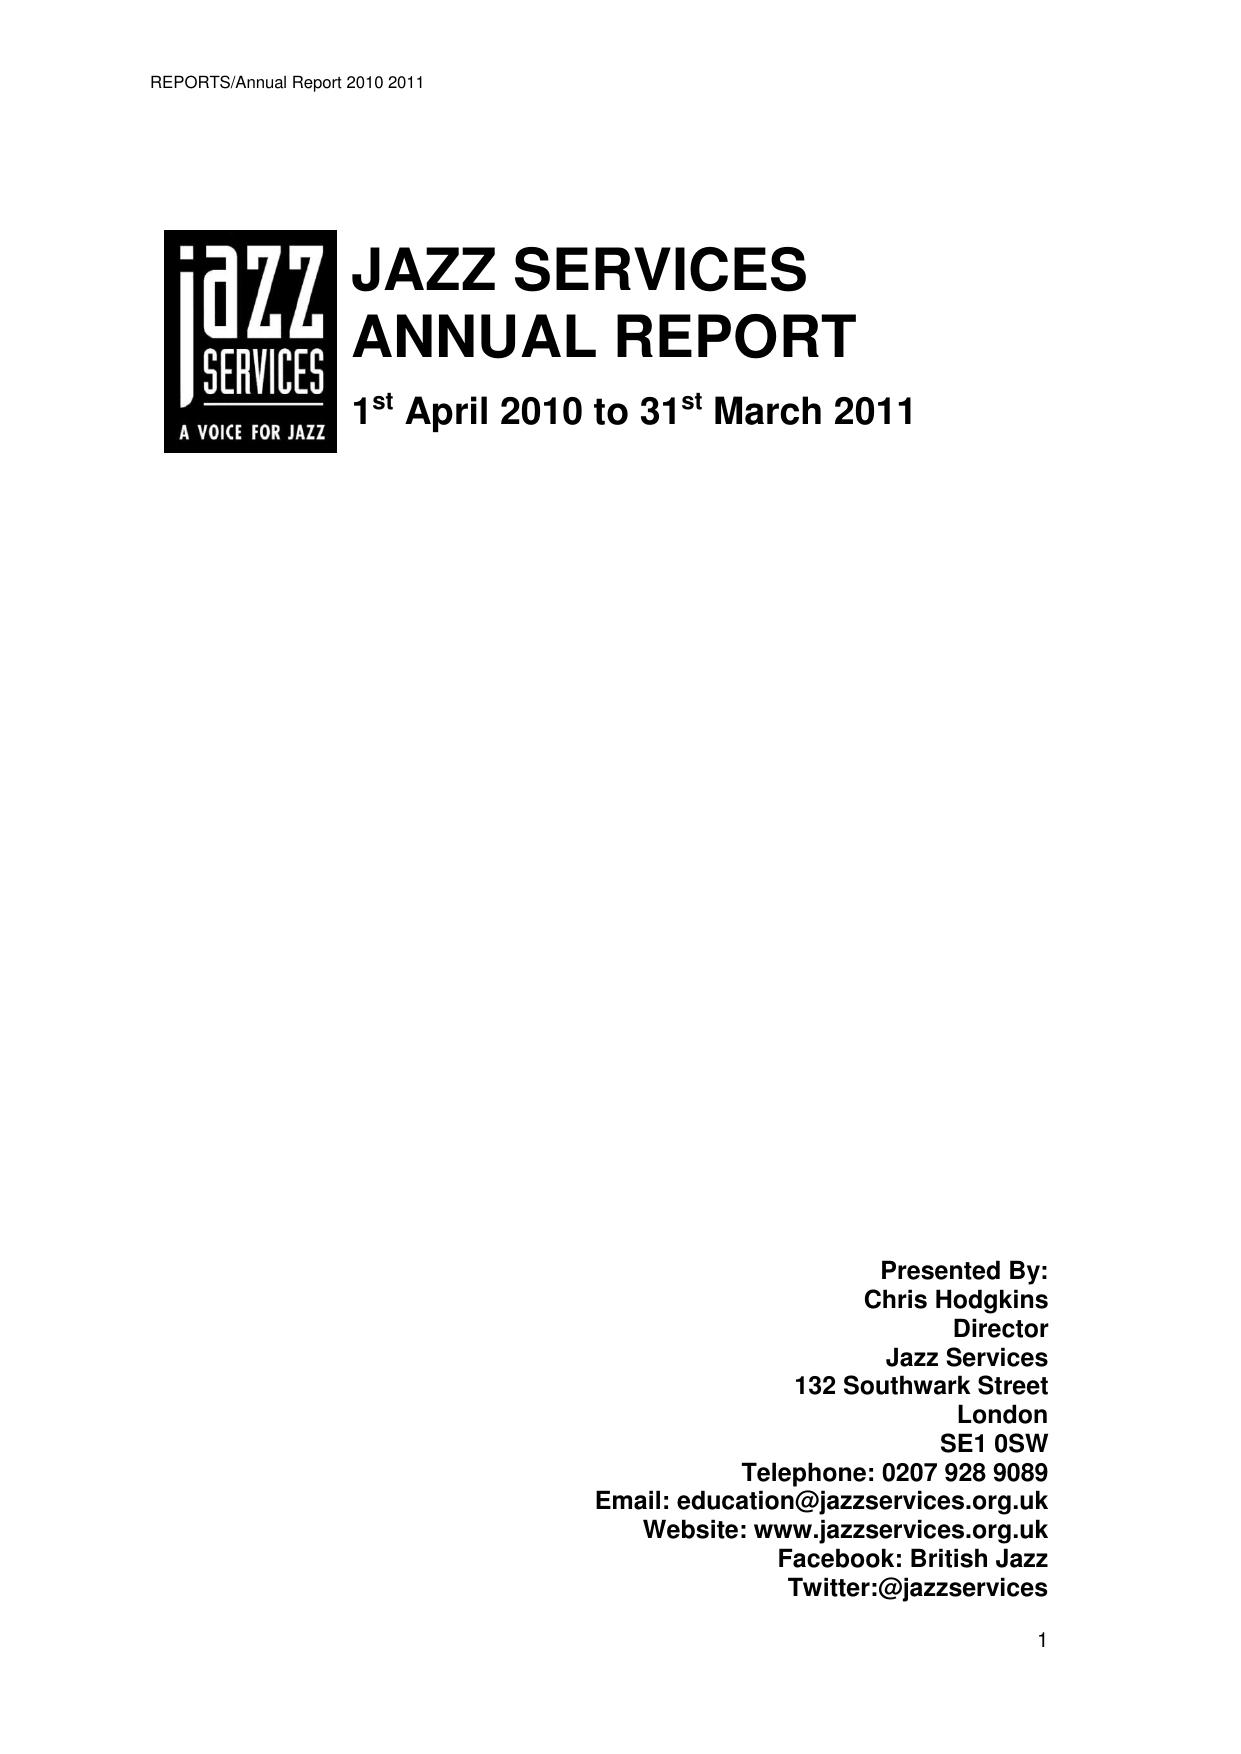 CHRISHODGKINS Annual Report